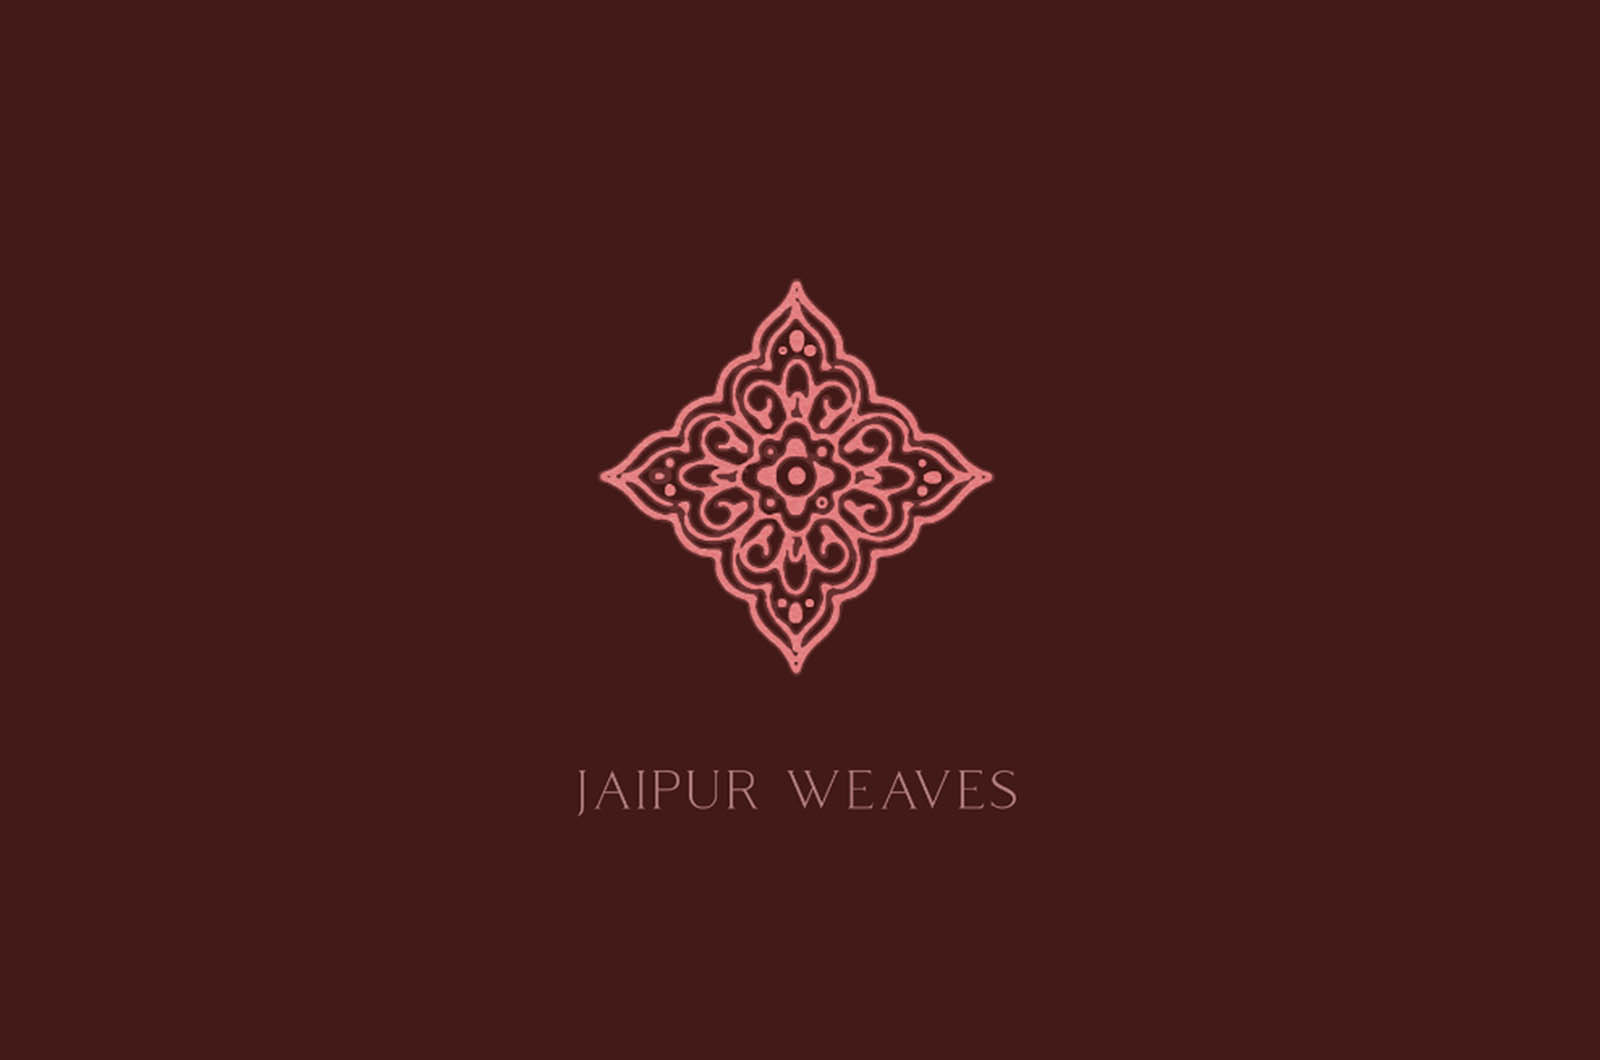 Jaipur Weaves